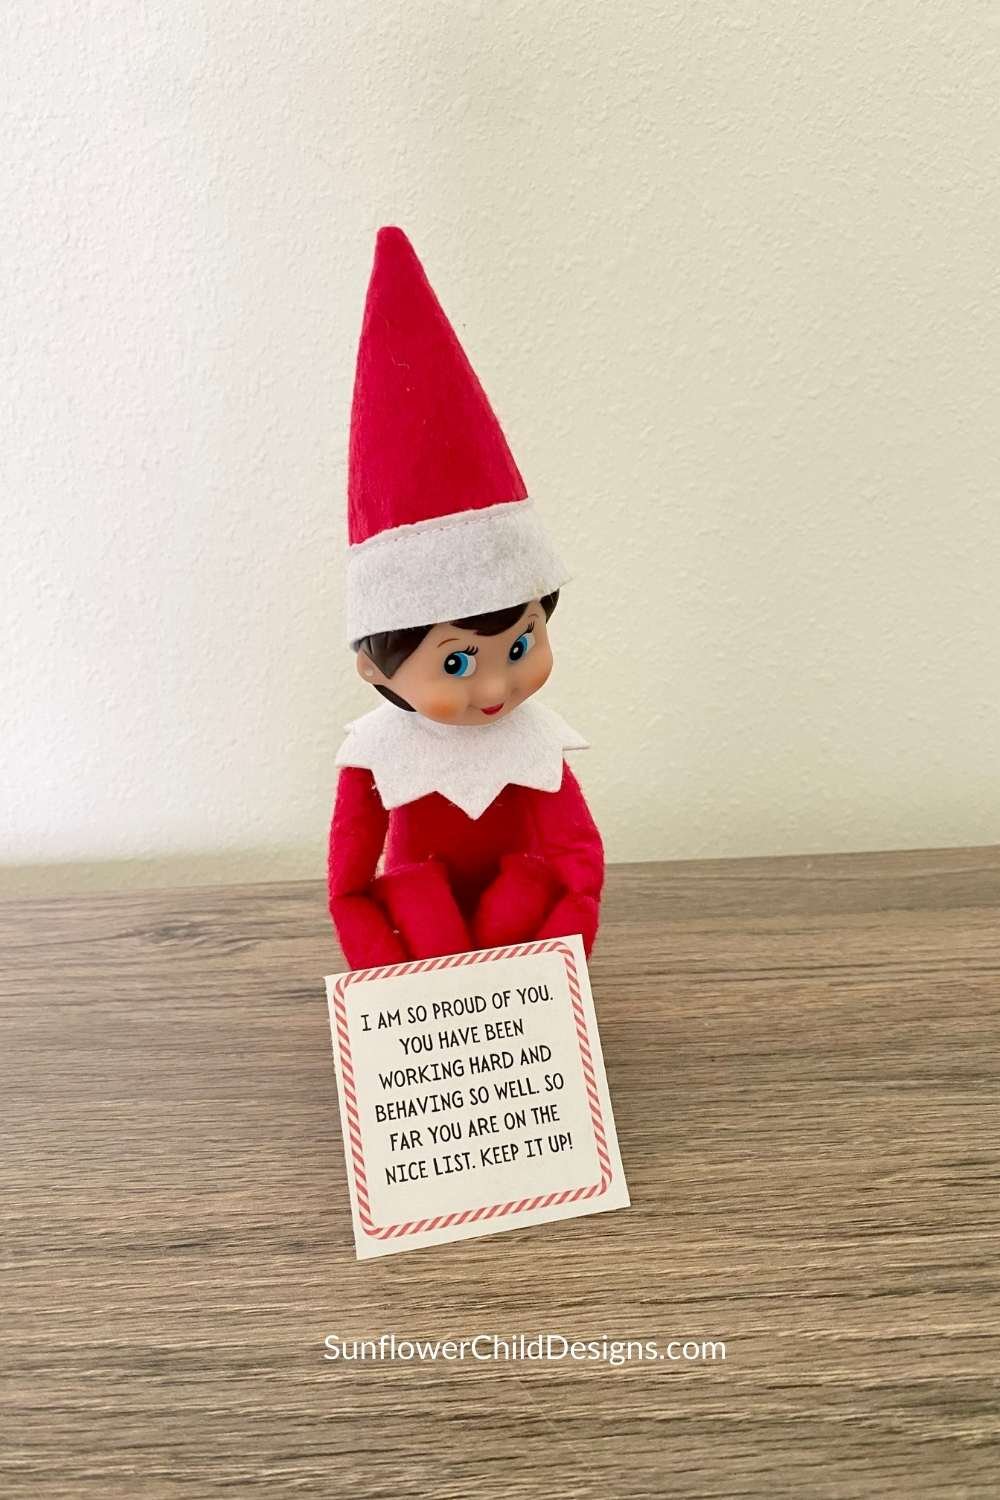 Elf sends a good behavior letter